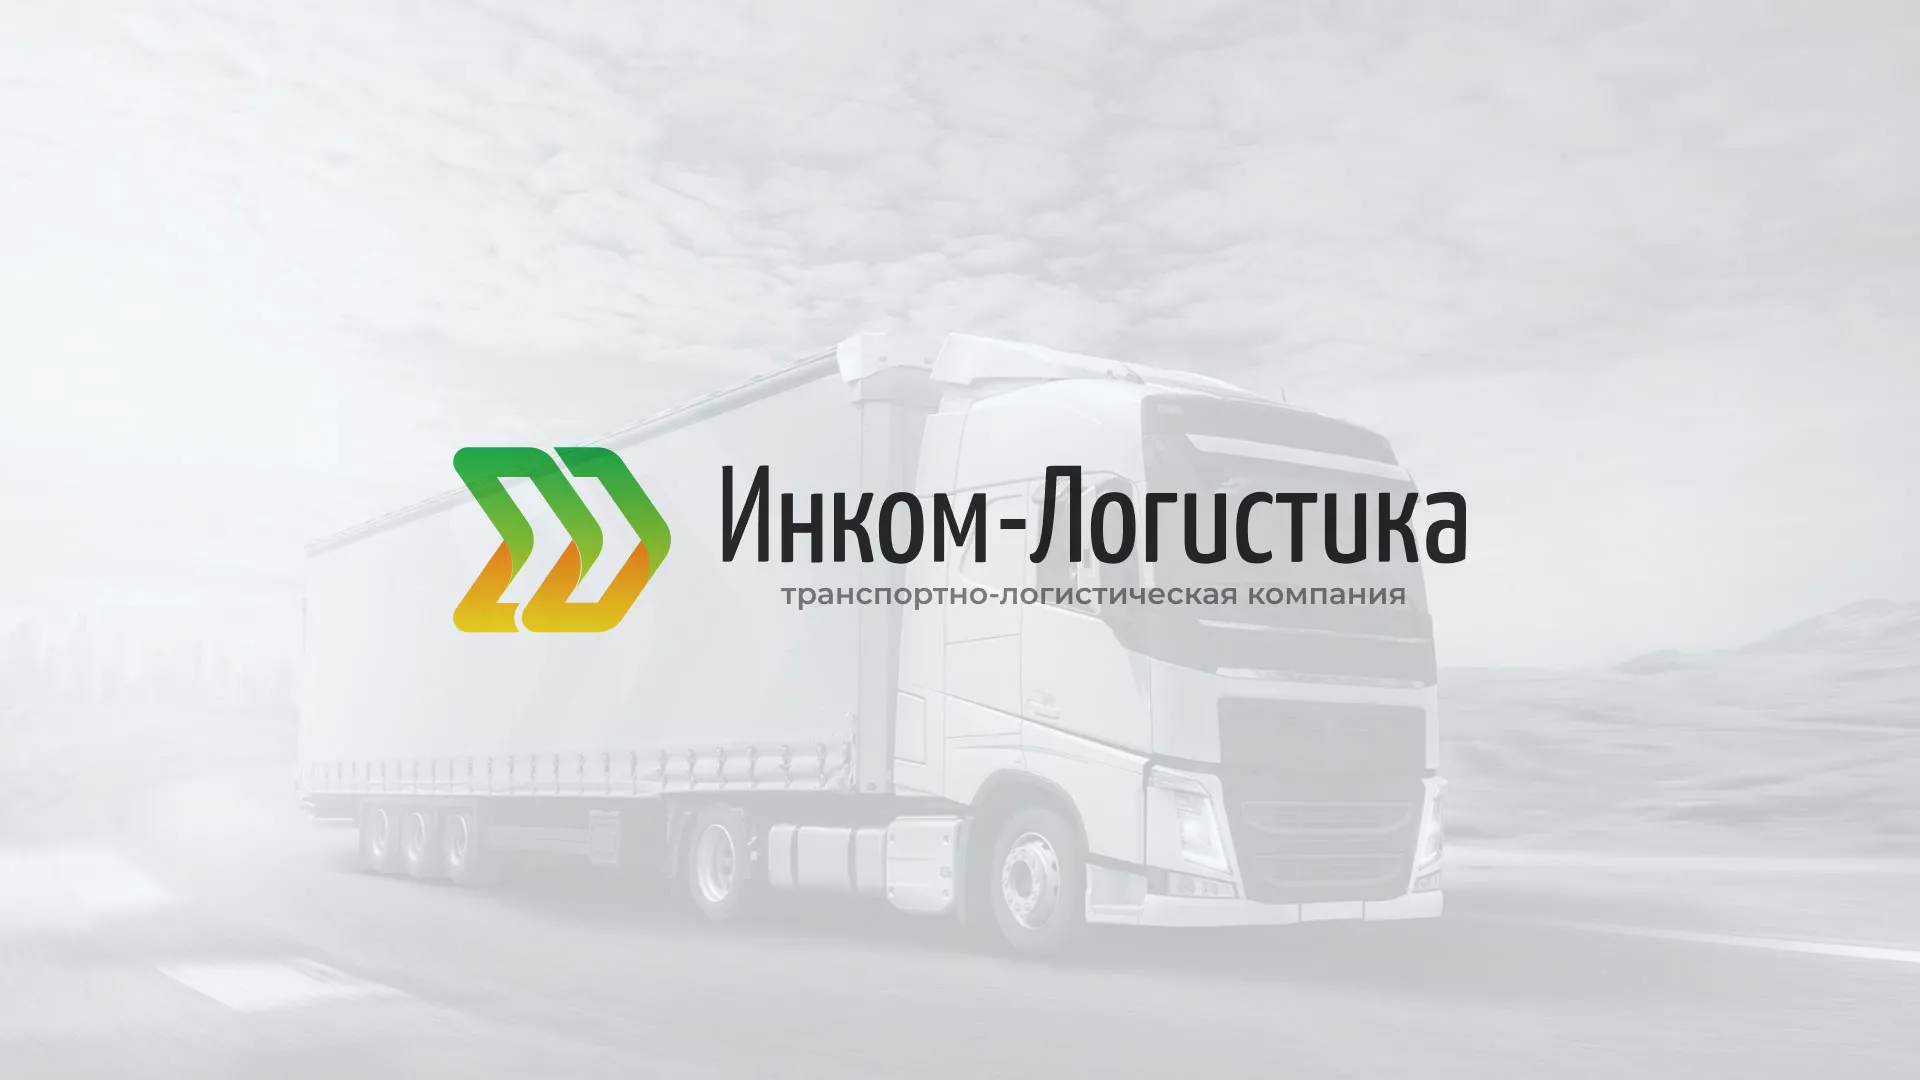 Разработка логотипа и сайта компании «Инком-Логистика» в Сердобске